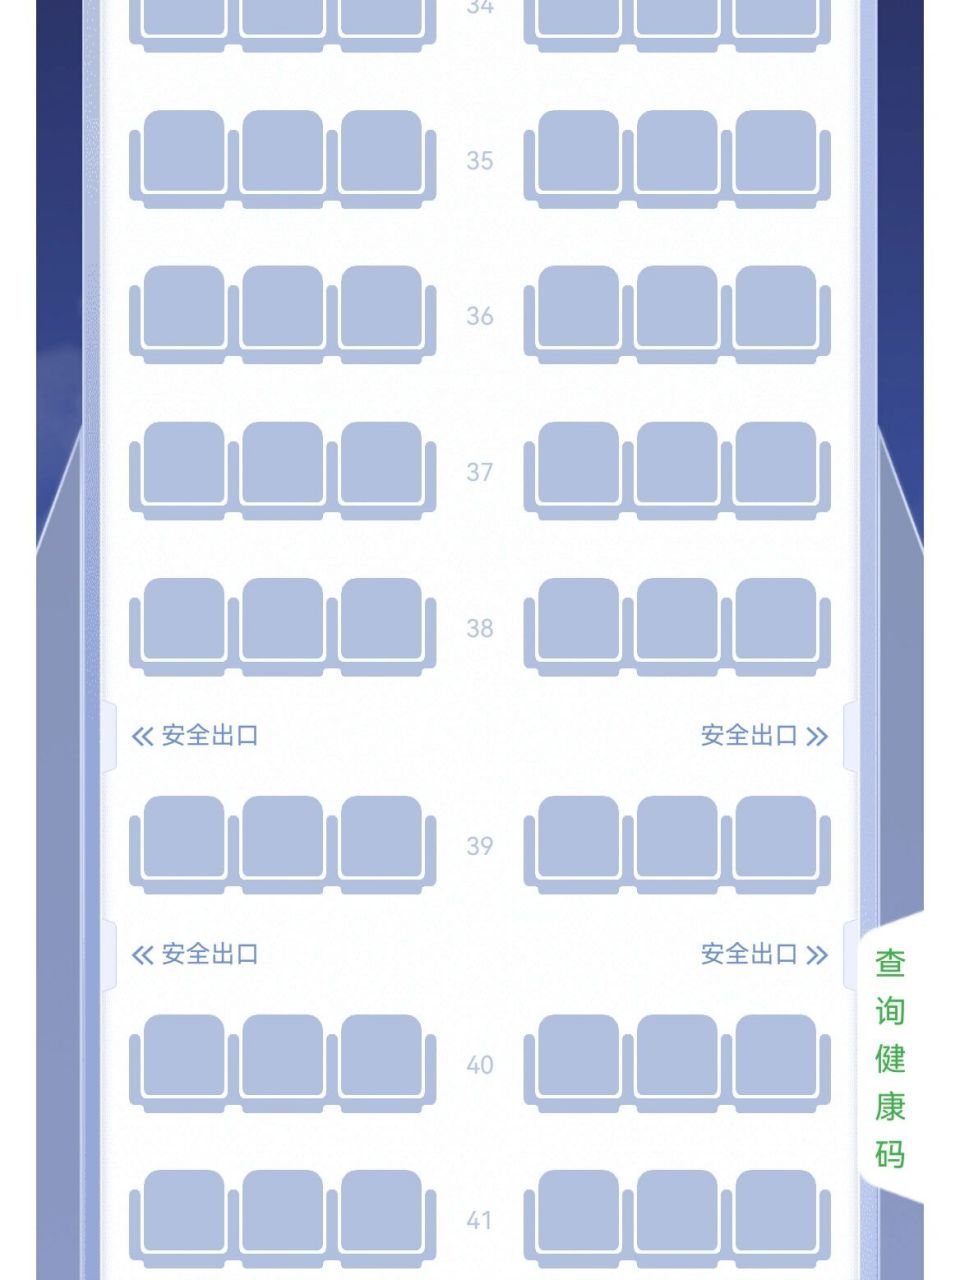 祥鹏空客330机型座位图图片